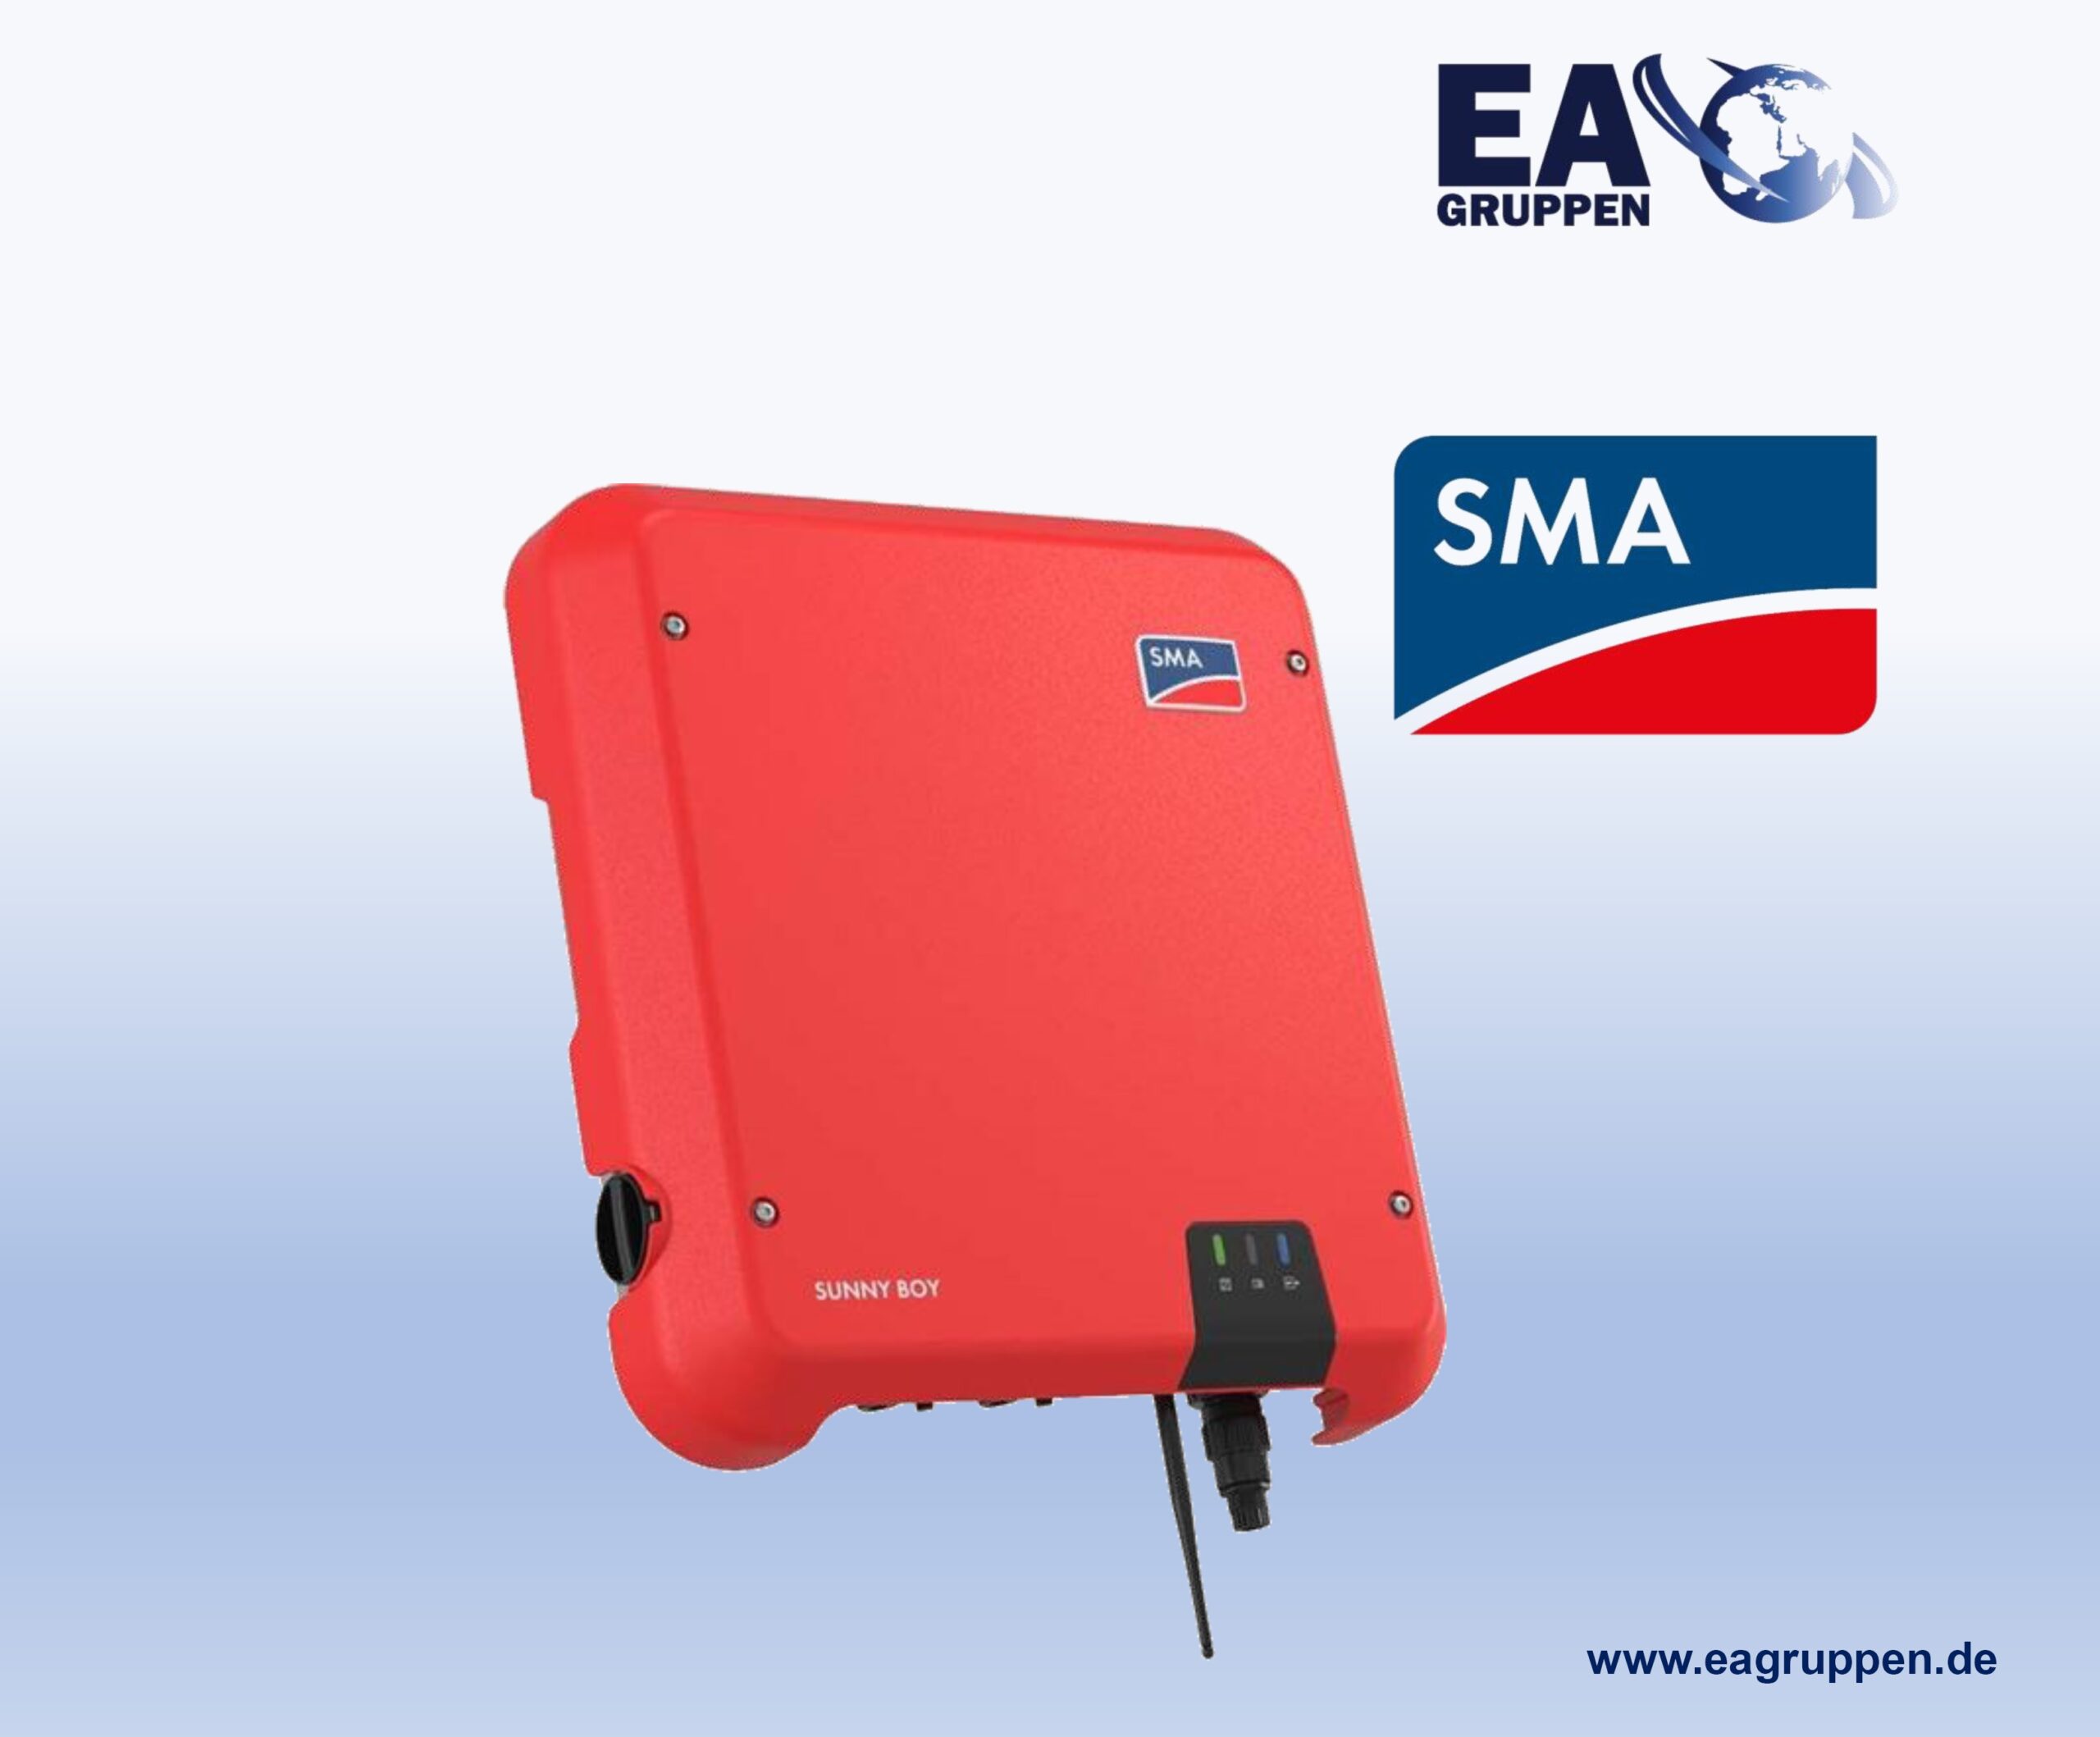 SMA Solar Wechselrichter Sunny Boy 5.0 AV-41 – WR0011 – EA Gruppen GmbH